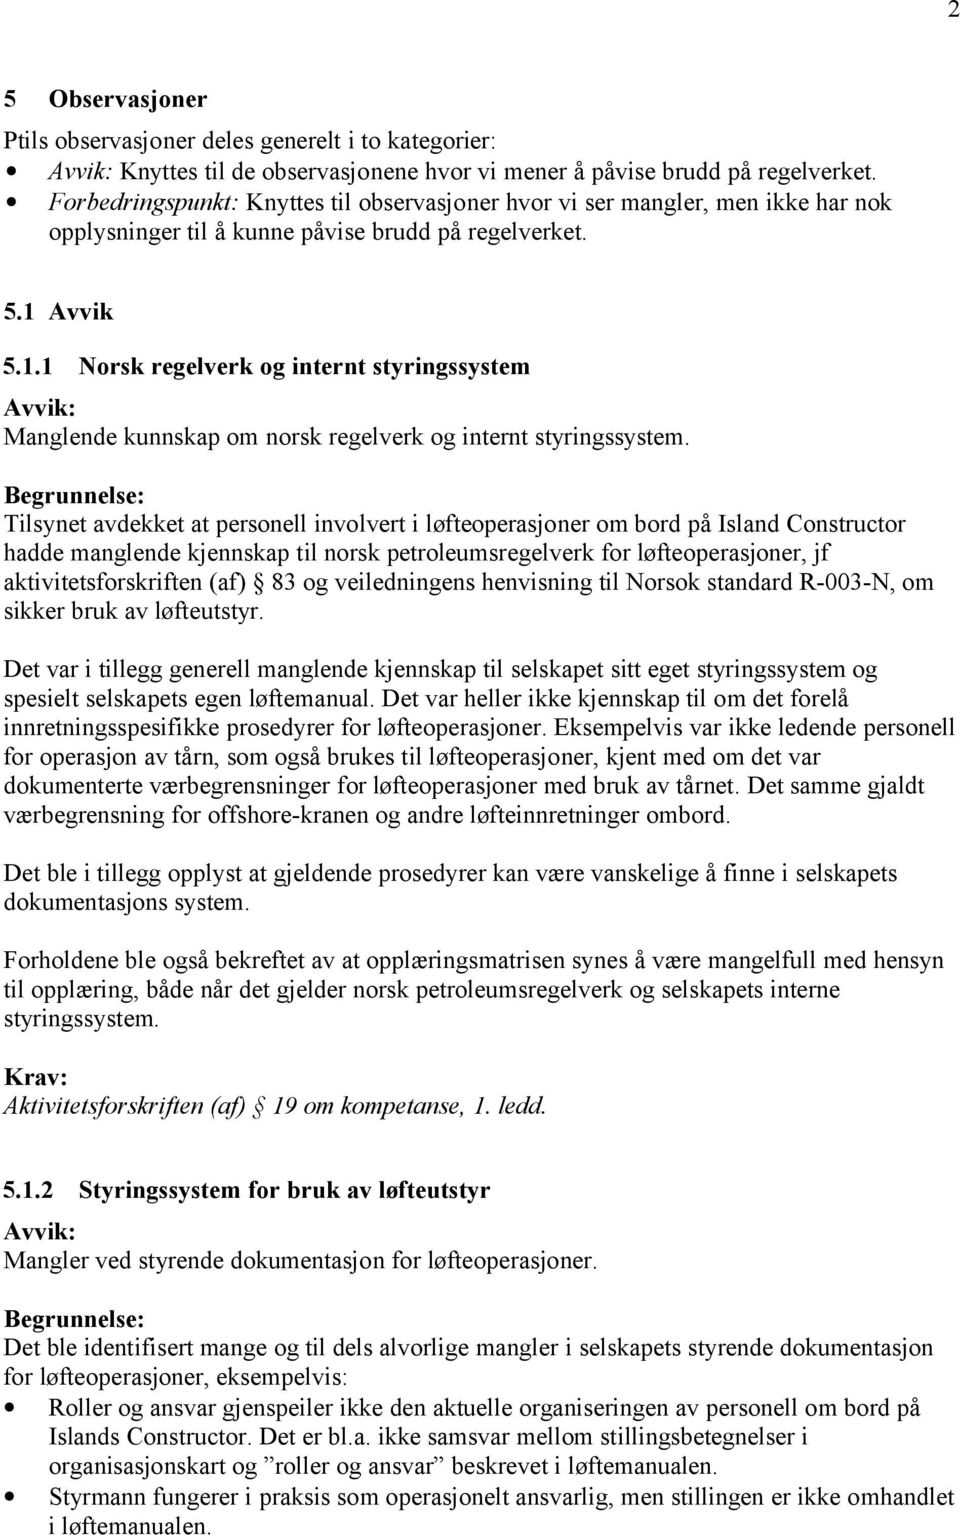 Avvik 5.1.1 Norsk regelverk og internt styringssystem Manglende kunnskap om norsk regelverk og internt styringssystem.